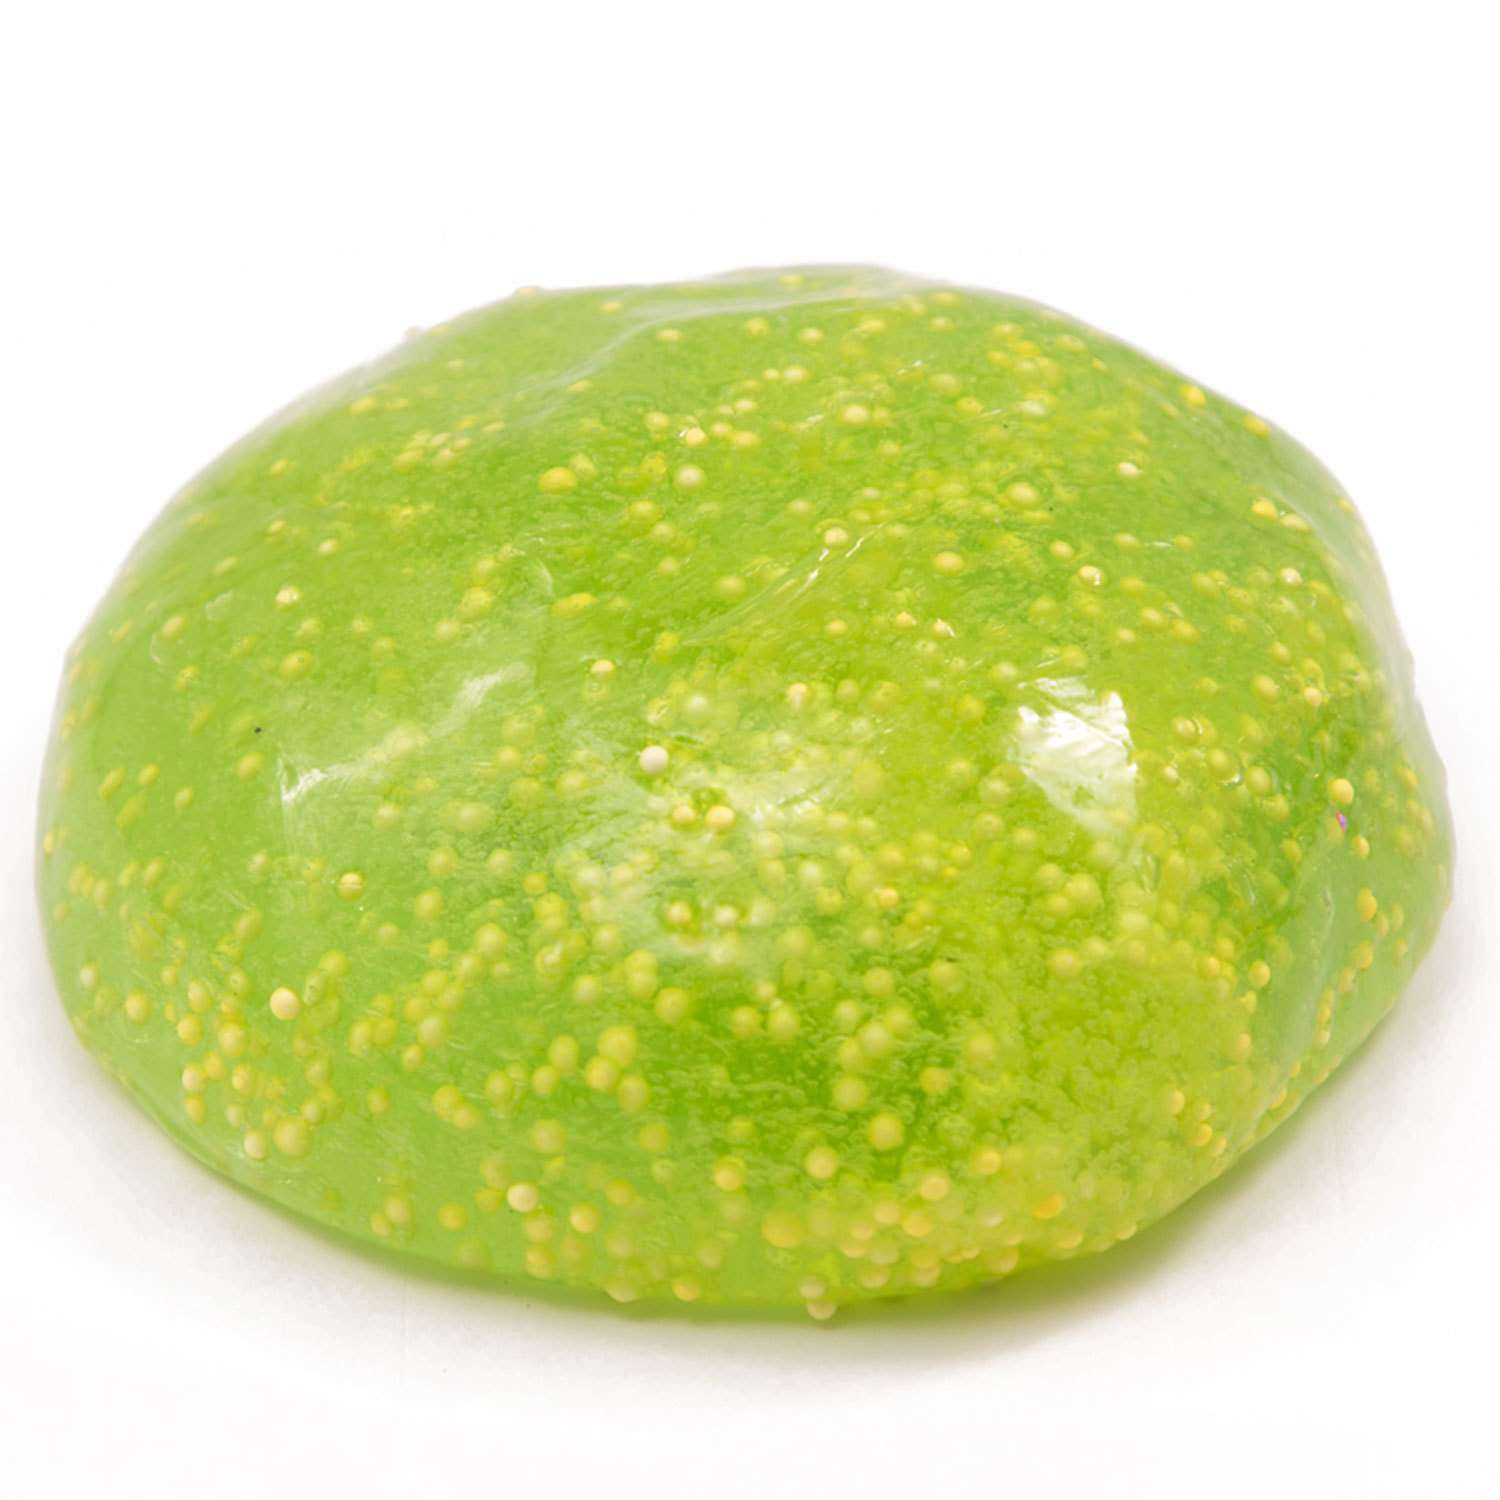 Лизун Slime Ninja Clear аромат яблока 250г S300-36 - фото 2